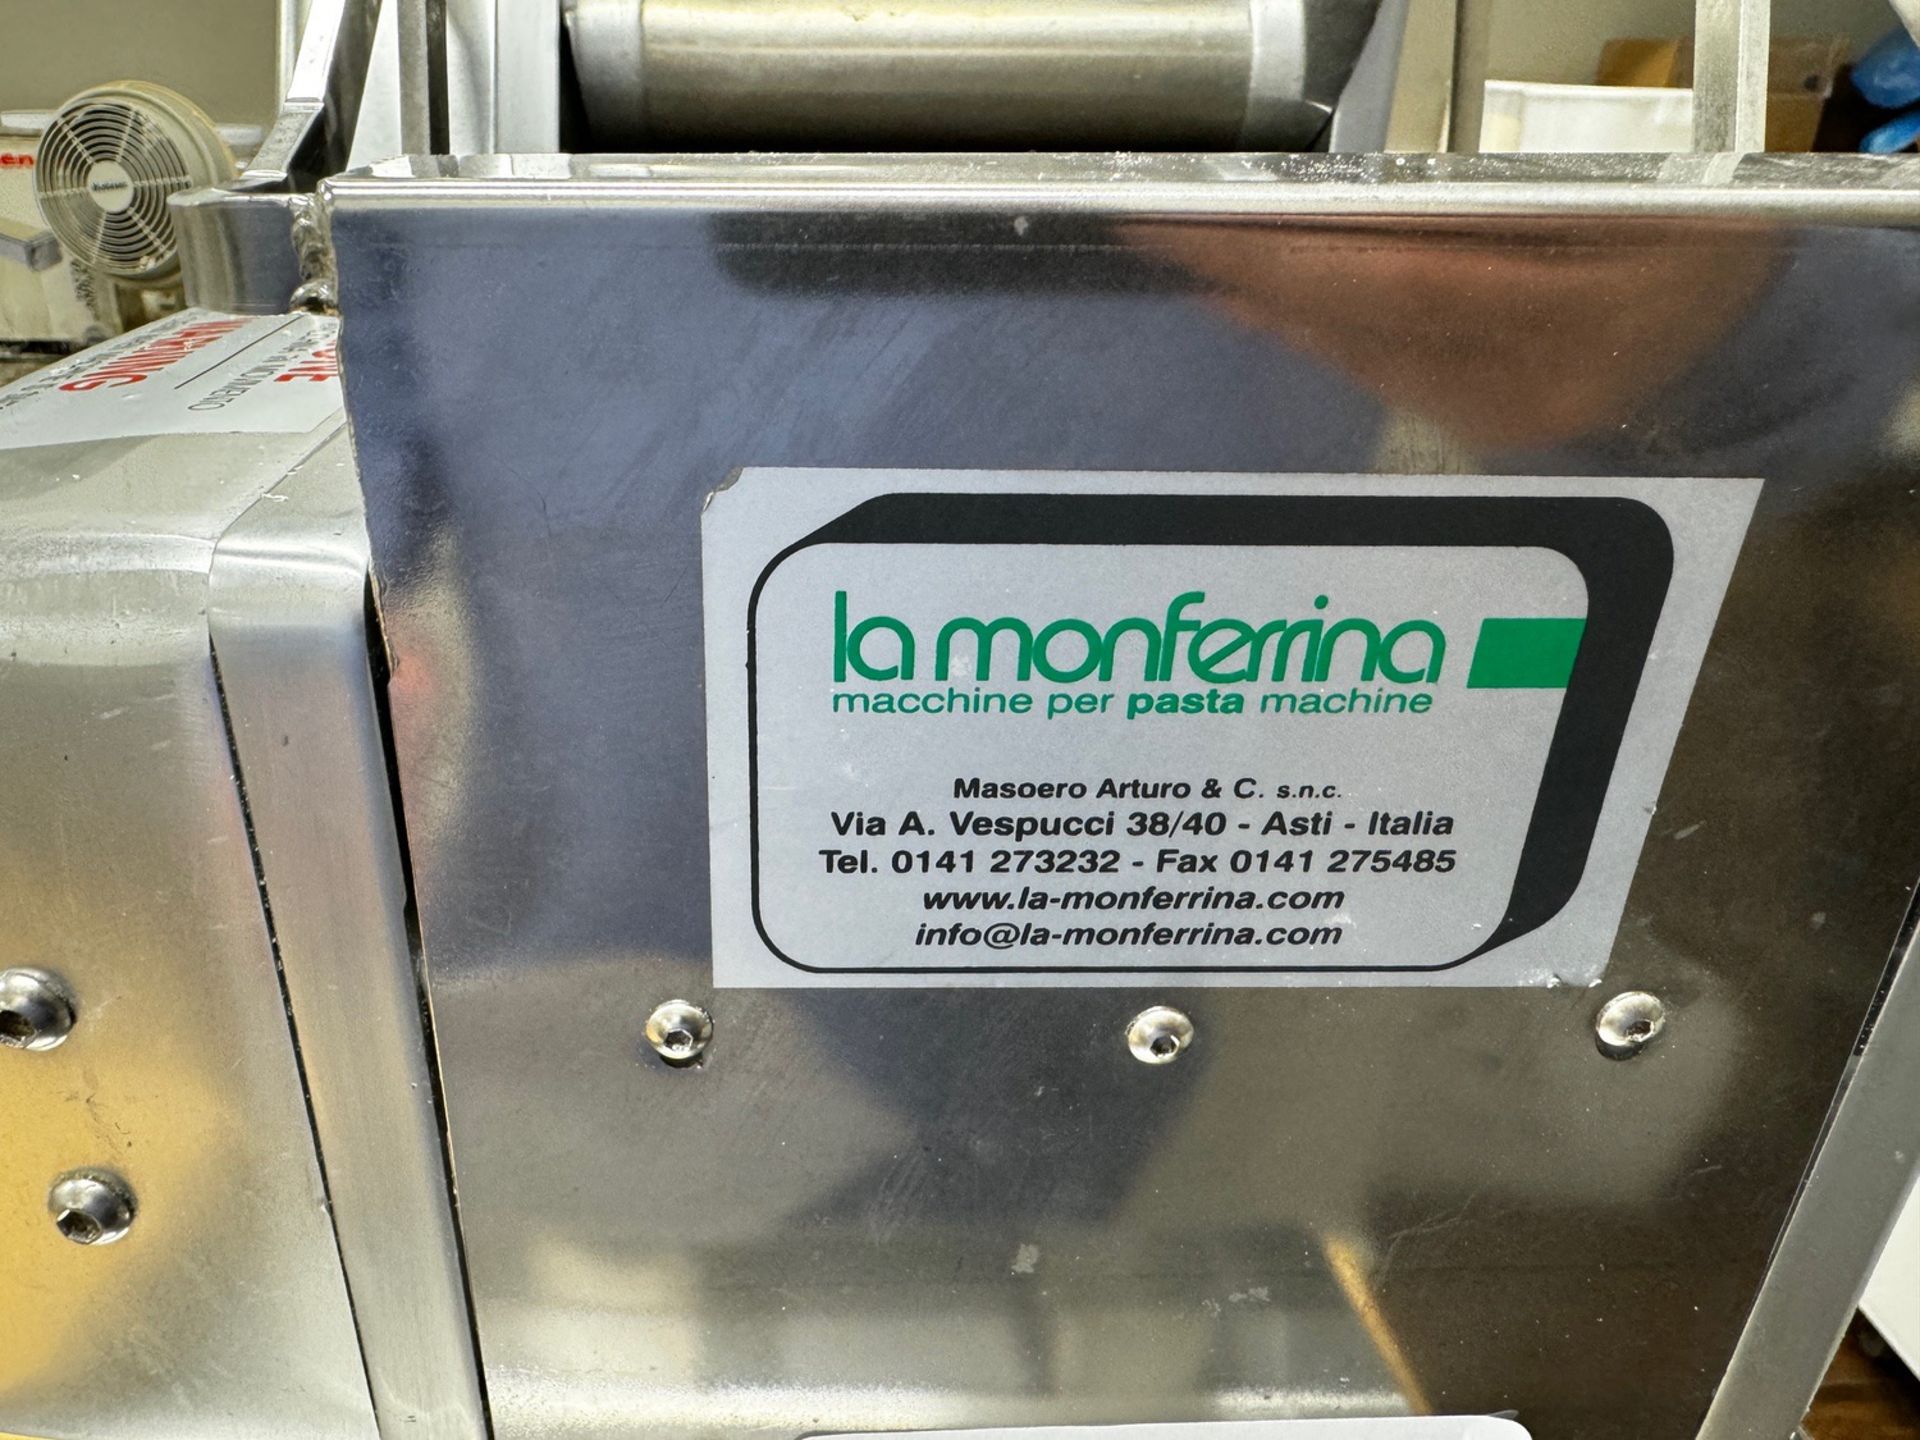 La Monferrina Test Kitchen Pasta Machine - Image 2 of 2